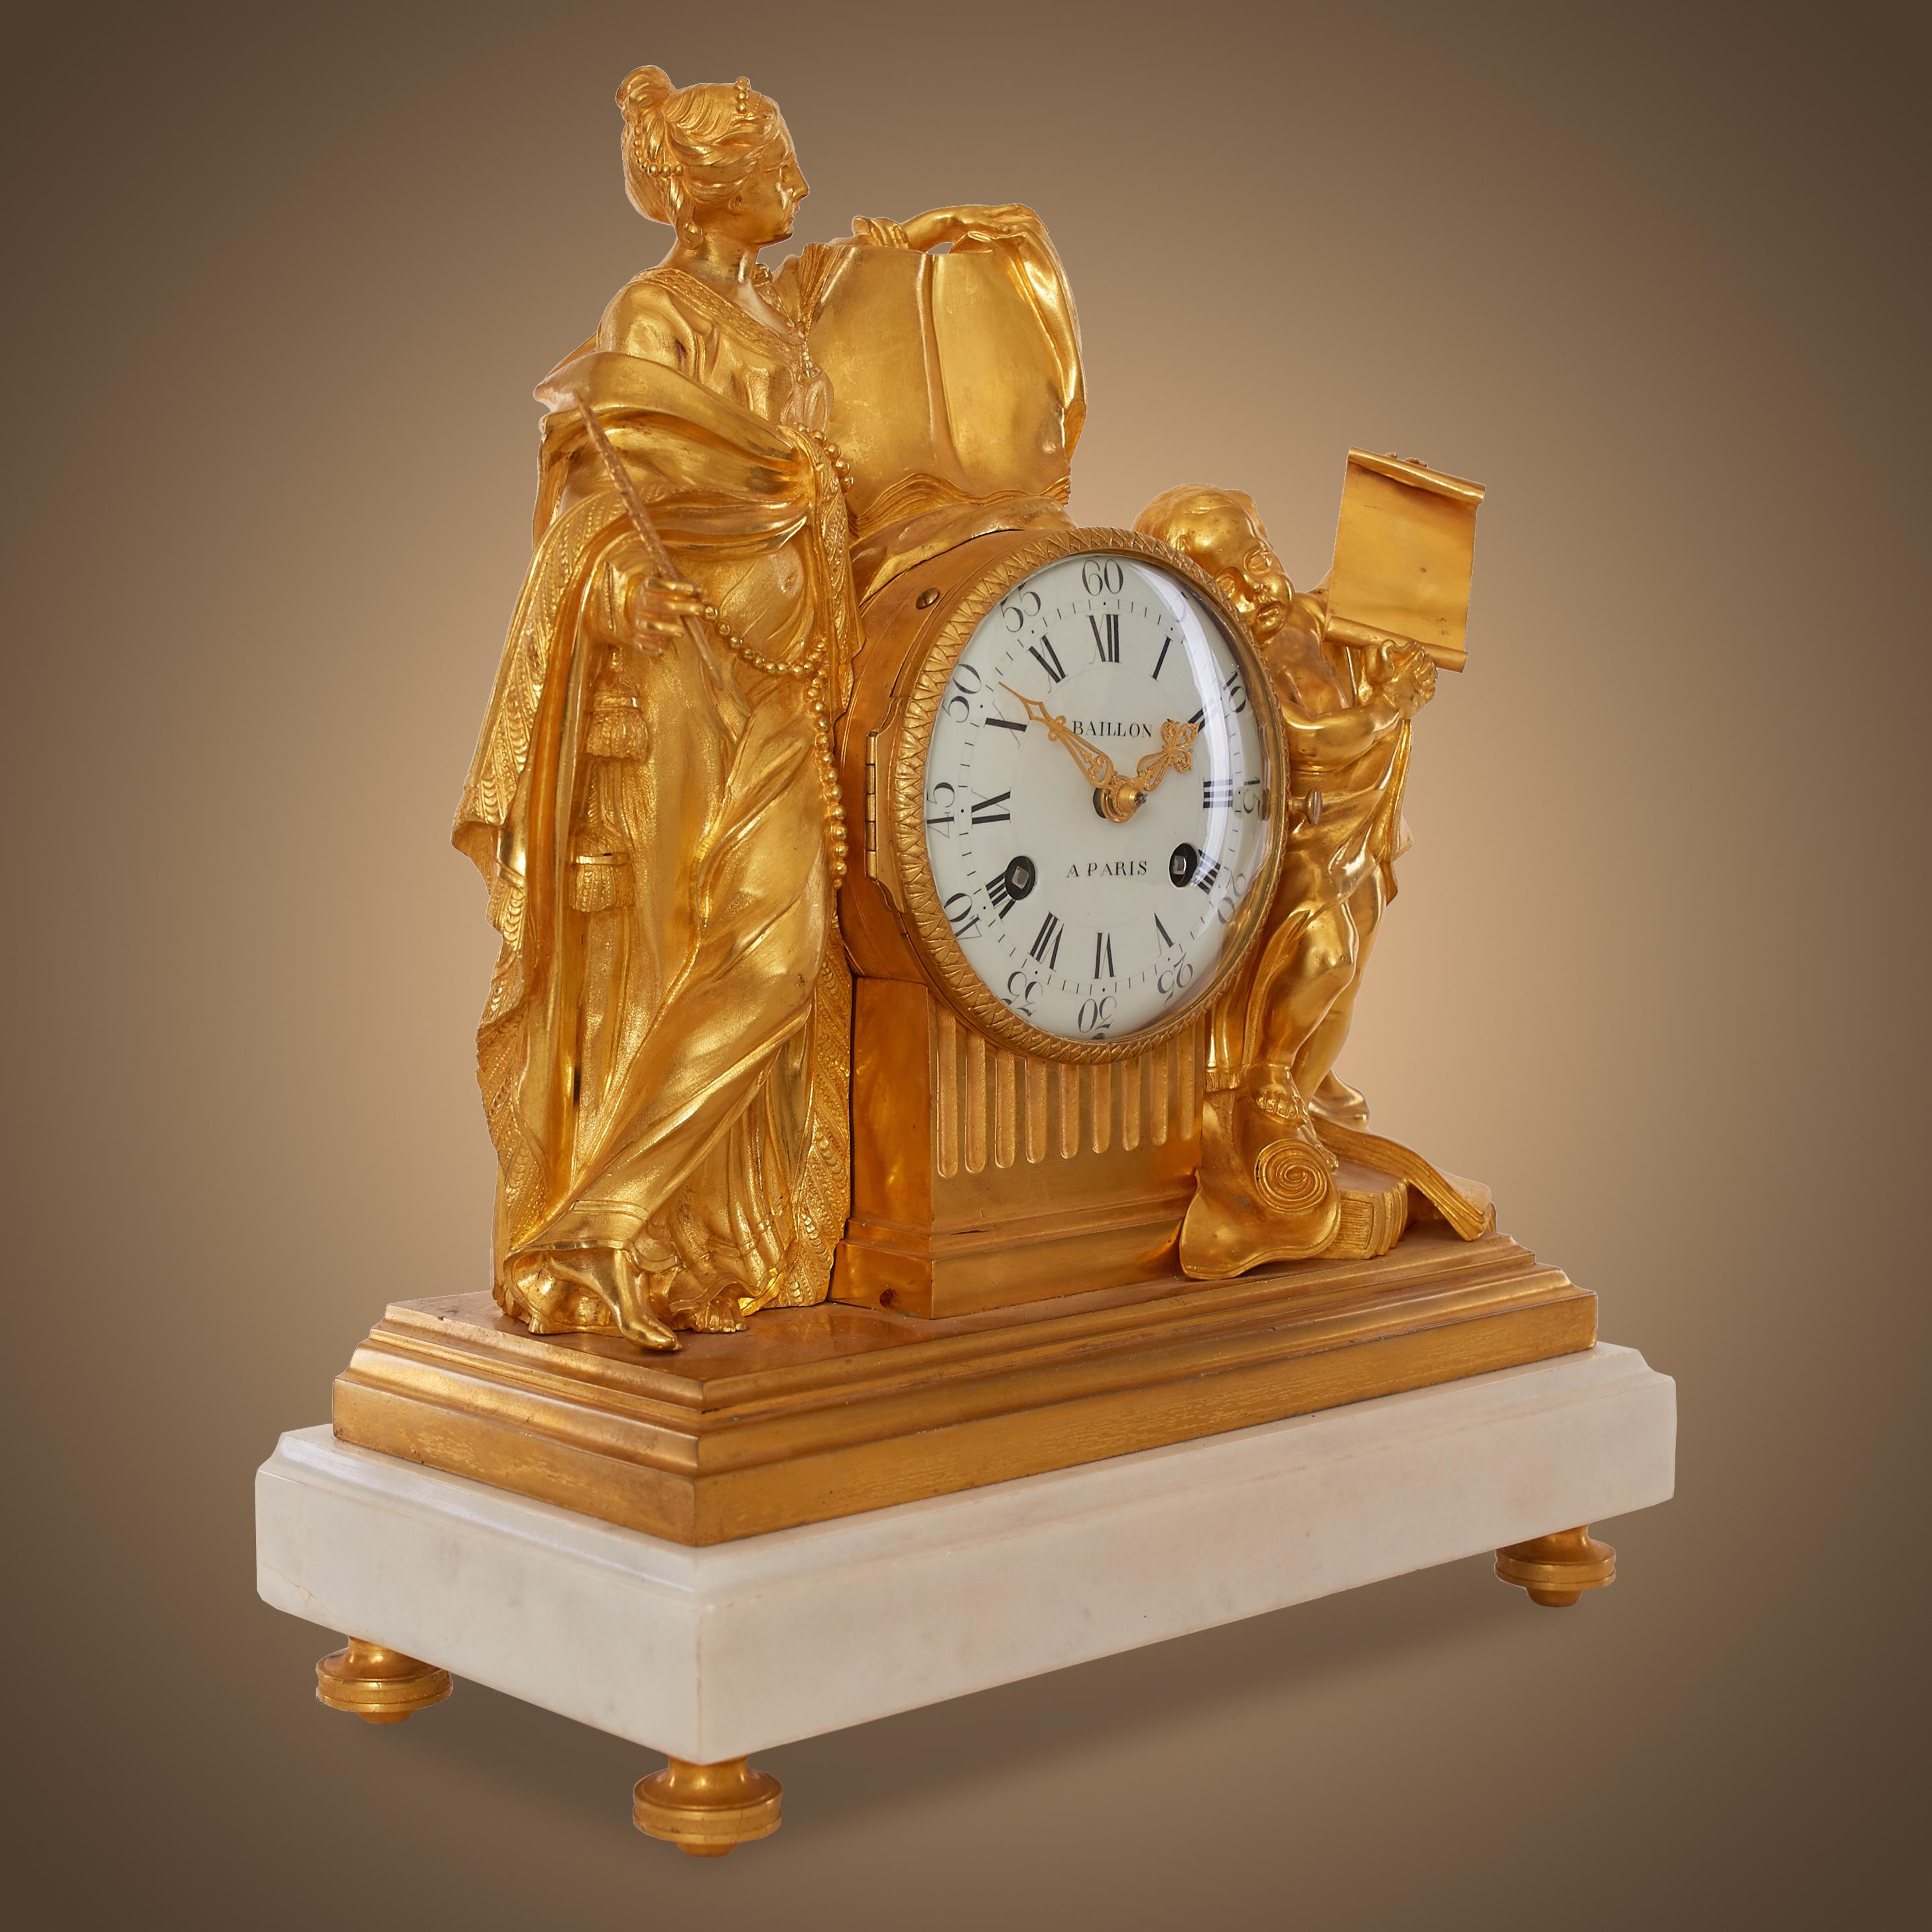 Il s'agit d'une authentique et unique horloge de table ou de cheminée française ancienne. Il est en bronze finement ciselé et doré. Le cadran présente des chiffres arabes à l'extérieur et des chiffres romains à l'intérieur, ainsi qu'une belle paire